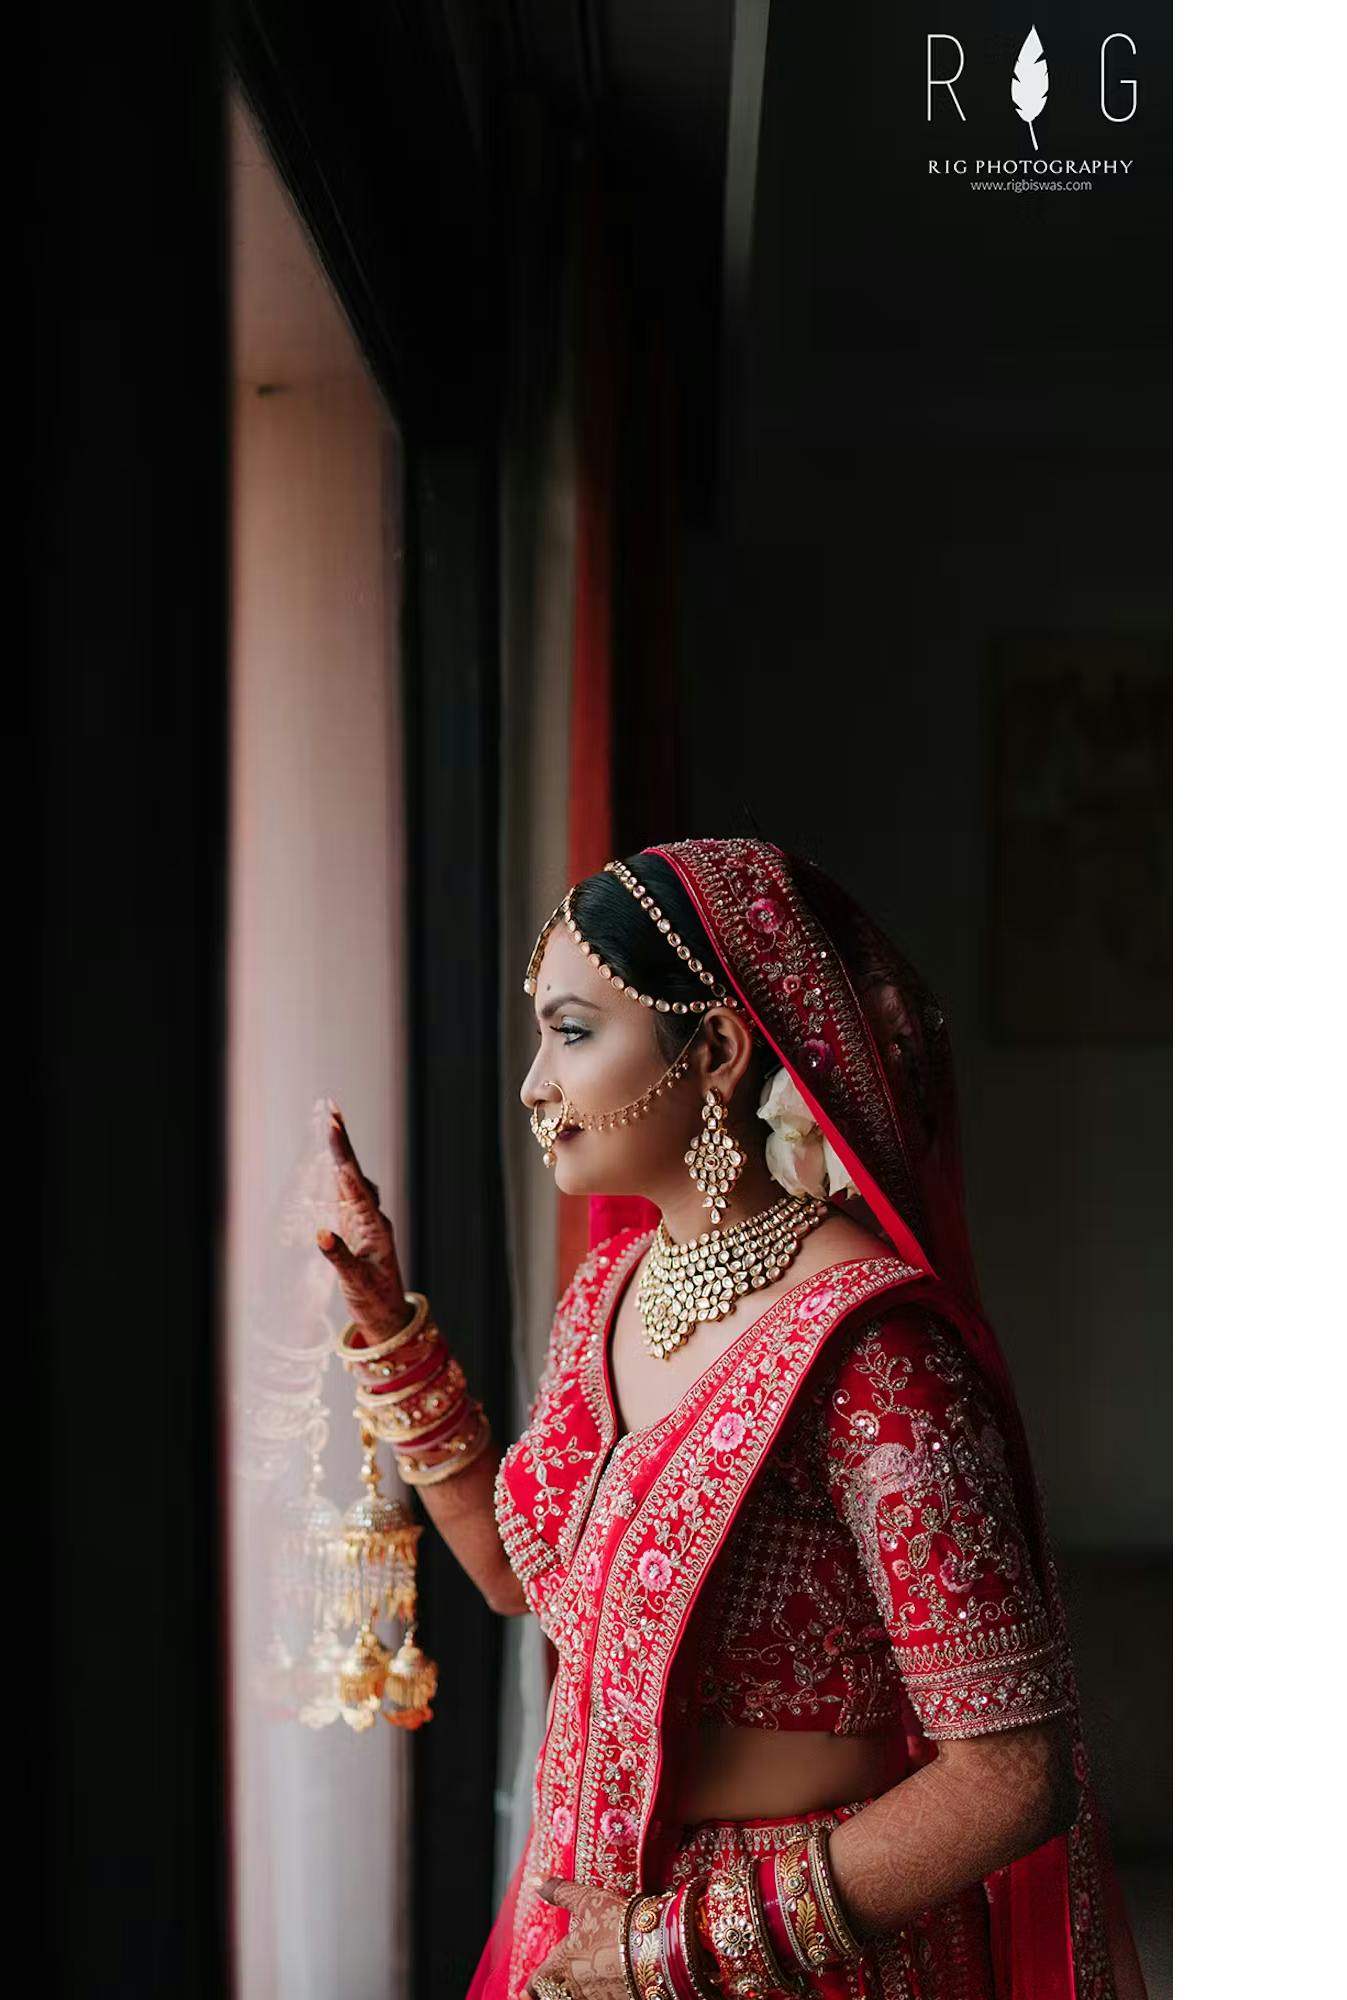 Solo image of a bride